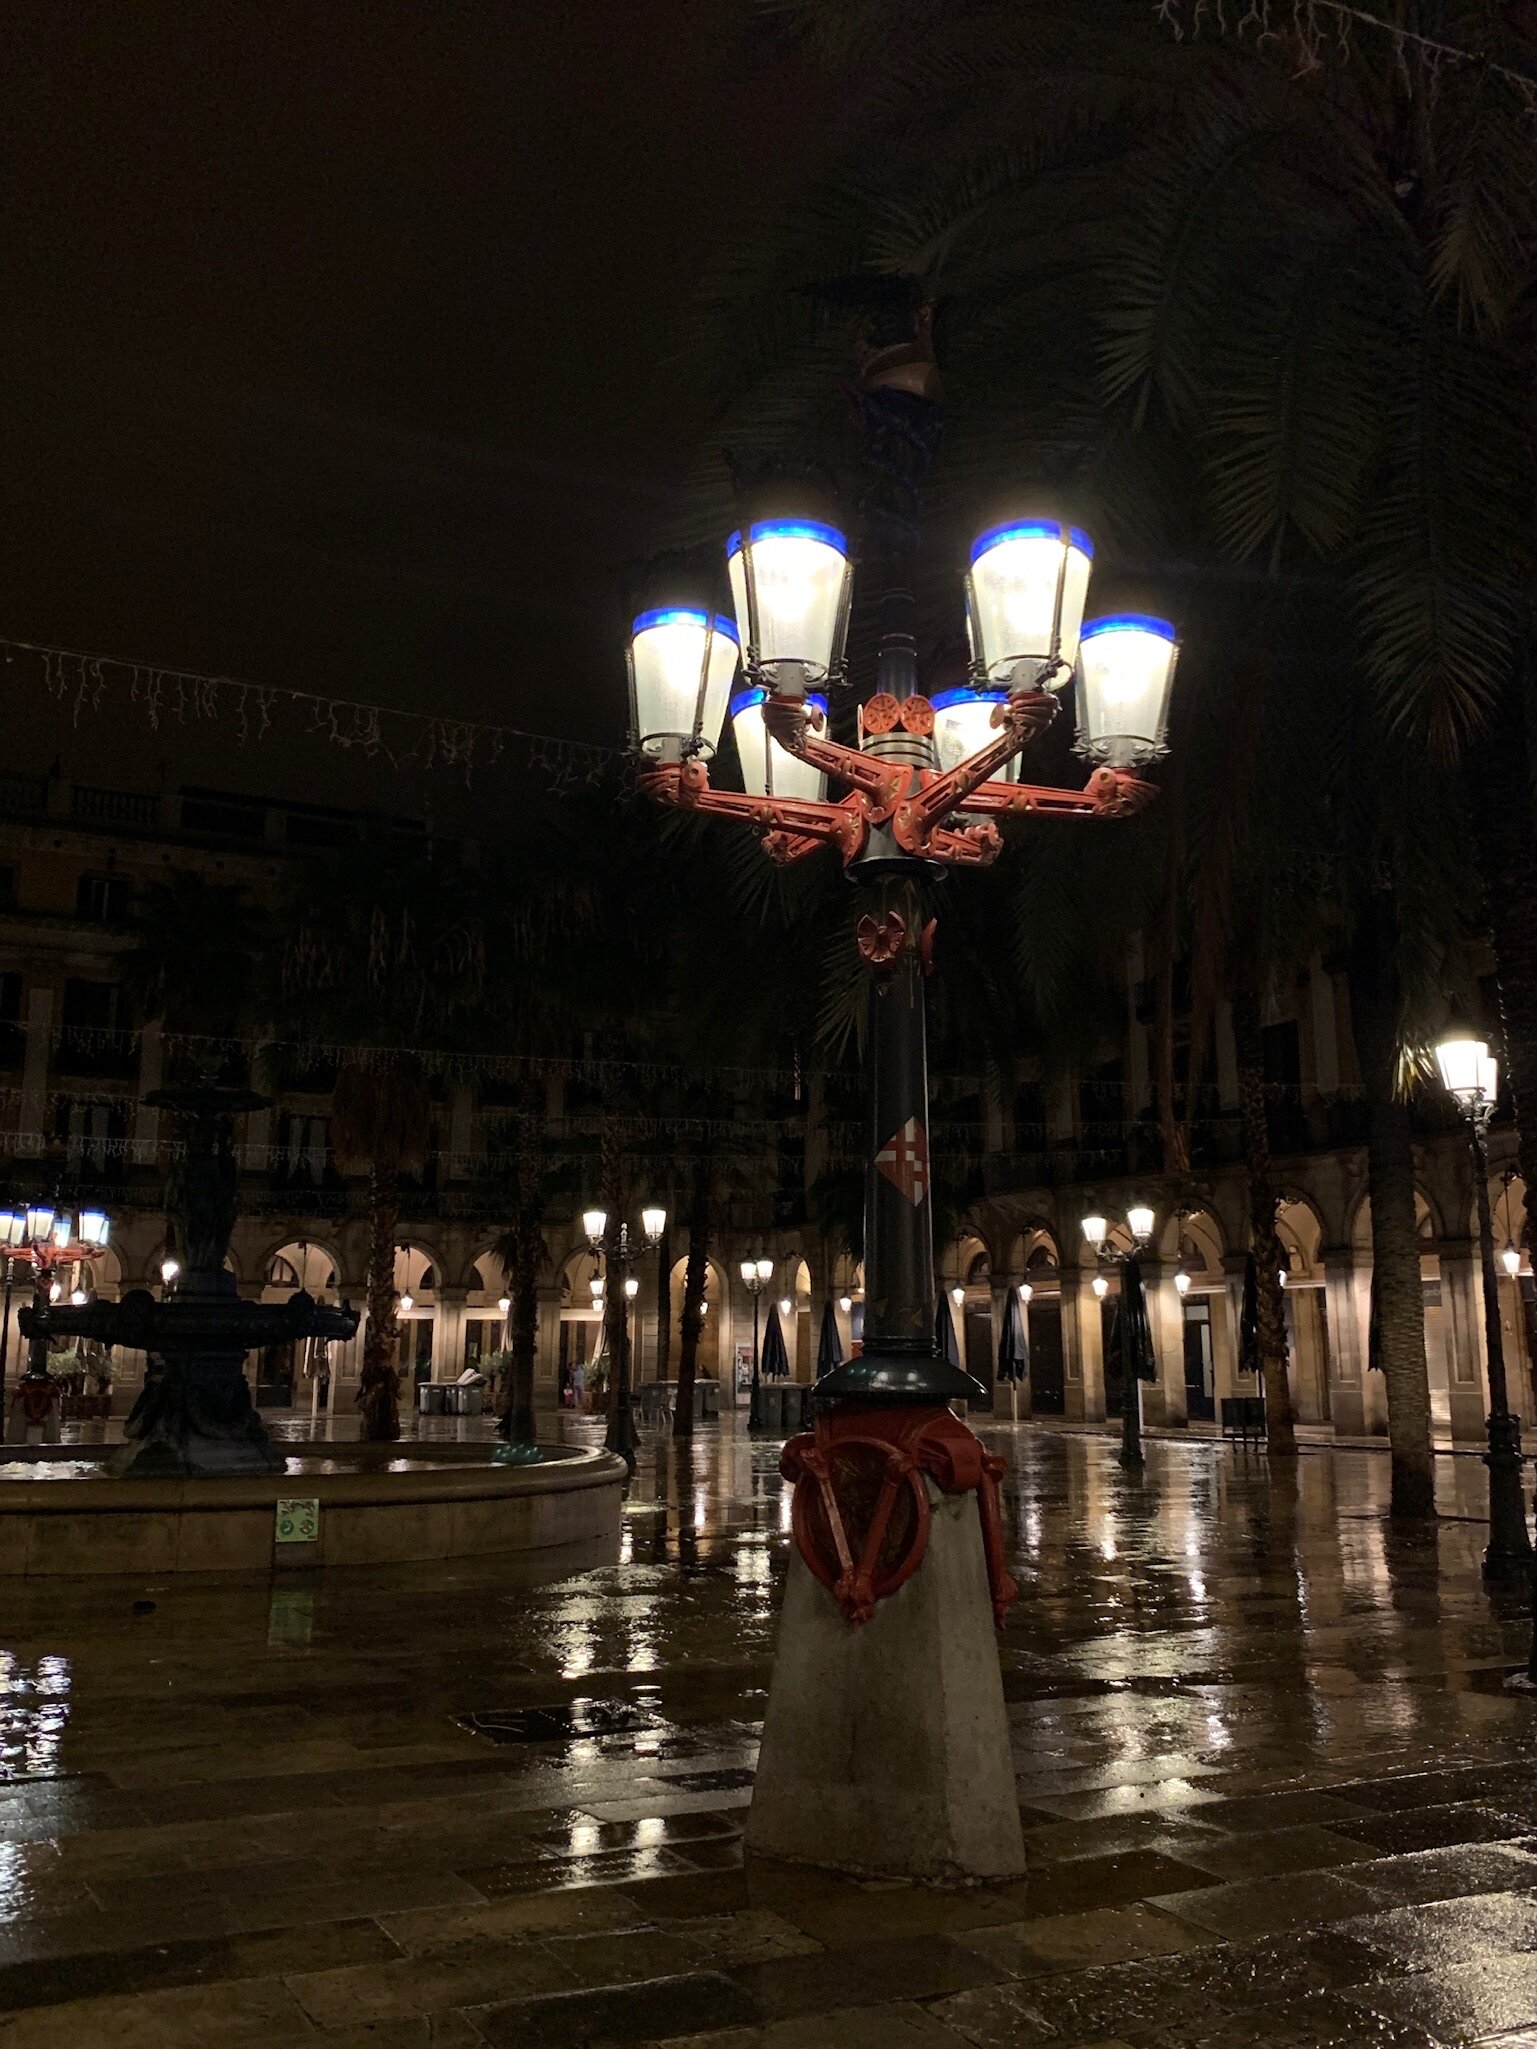 Gaudi Lamps at Placa Reial